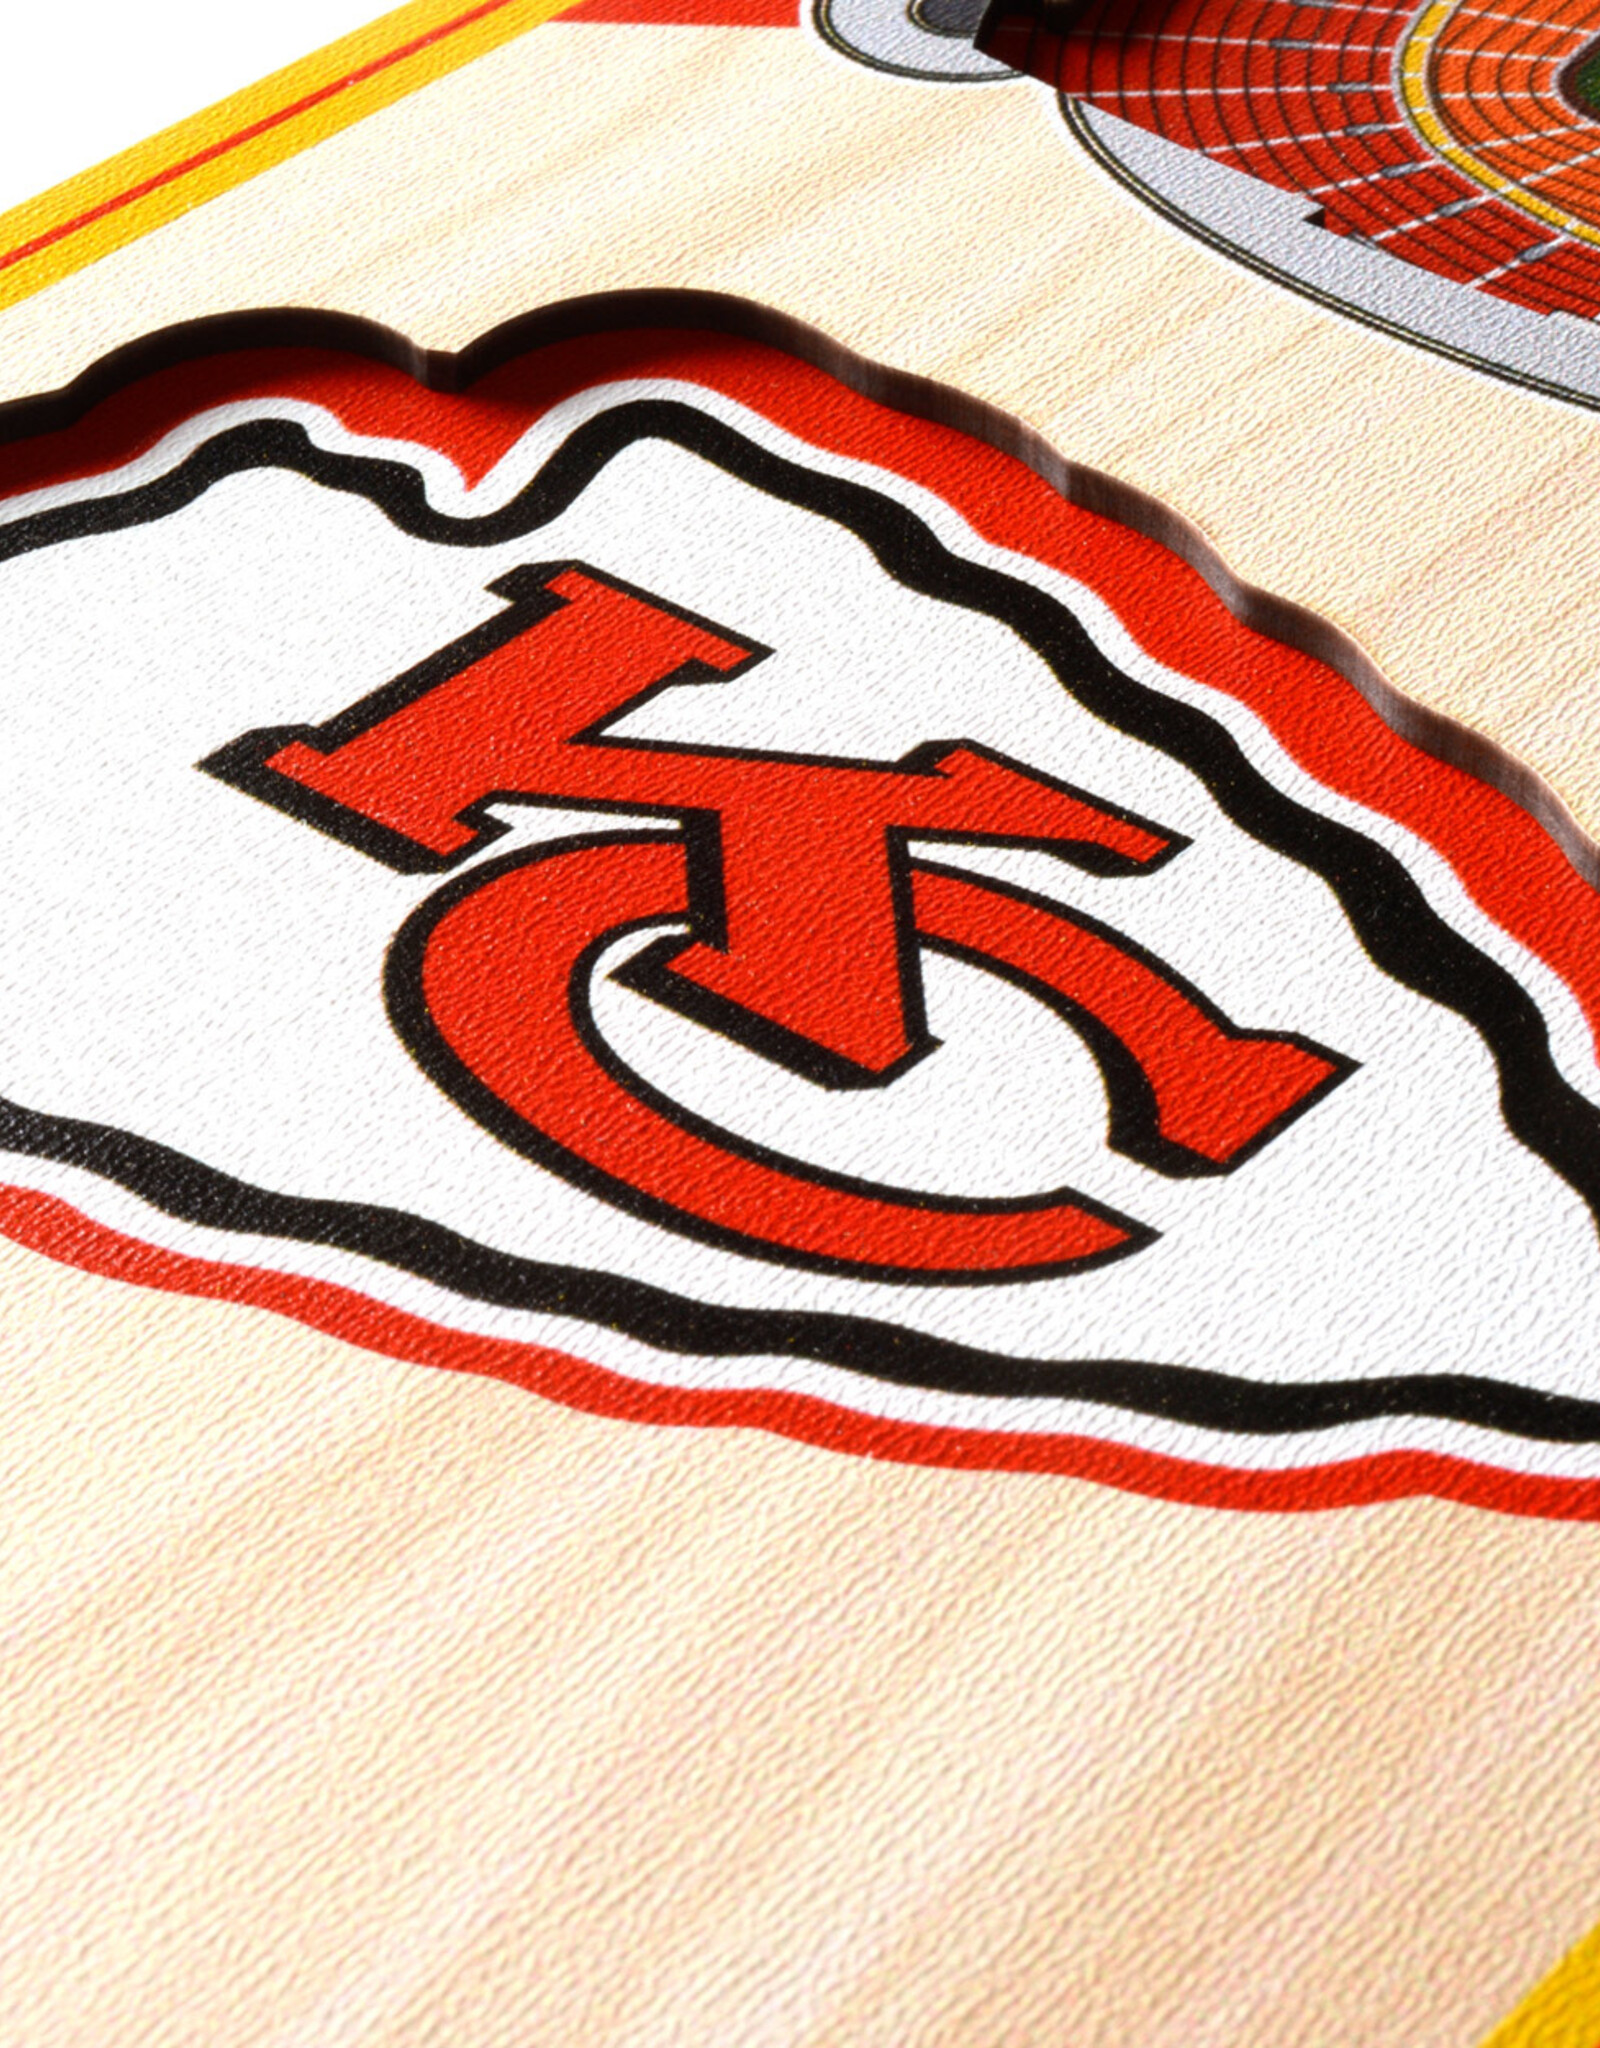 YOU THE FAN Kansas City Chiefs 3D StadiumView 6x19 Banner